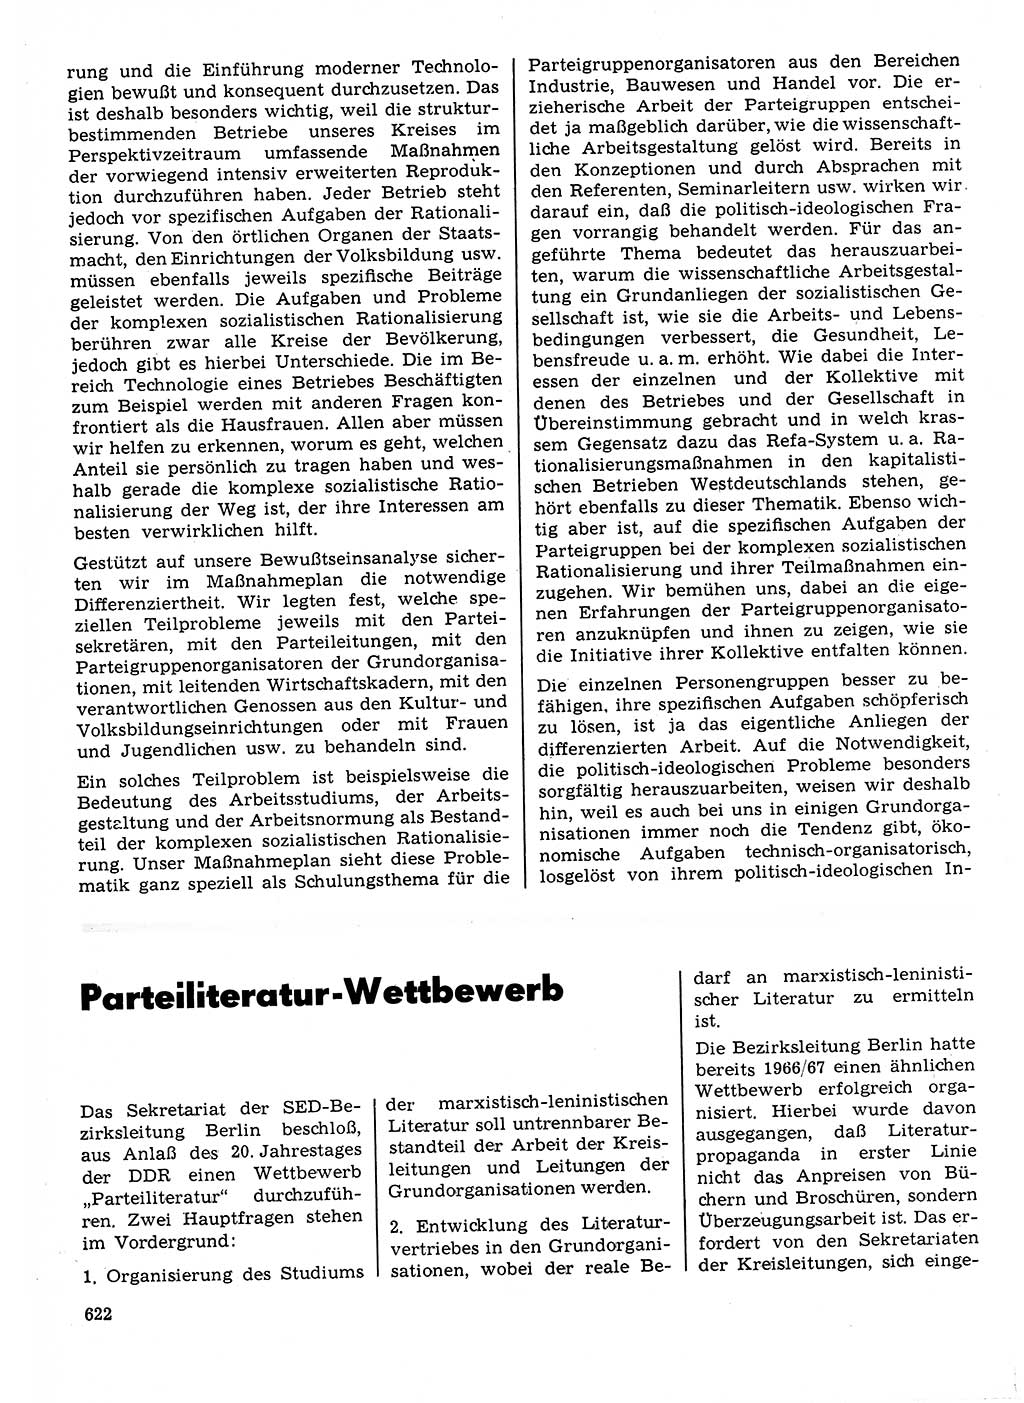 Neuer Weg (NW), Organ des Zentralkomitees (ZK) der SED (Sozialistische Einheitspartei Deutschlands) für Fragen des Parteilebens, 23. Jahrgang [Deutsche Demokratische Republik (DDR)] 1968, Seite 622 (NW ZK SED DDR 1968, S. 622)